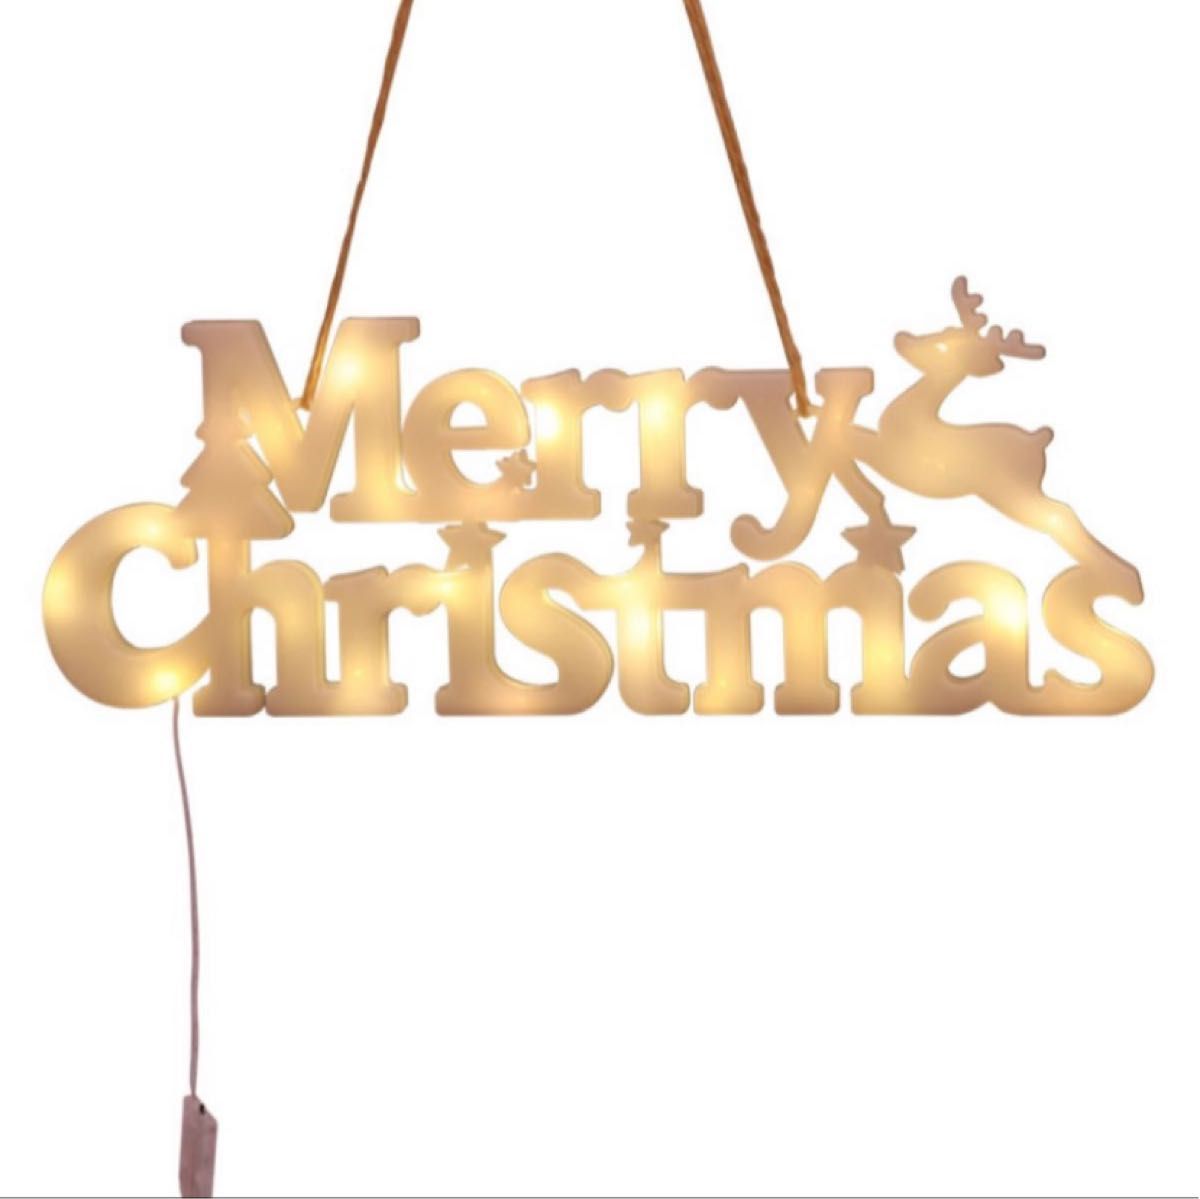 【クリスマス特価】クリスマスオーナメント 電飾飾り メリークリスマス デコレーション ガーランド イルミネーション 室内用